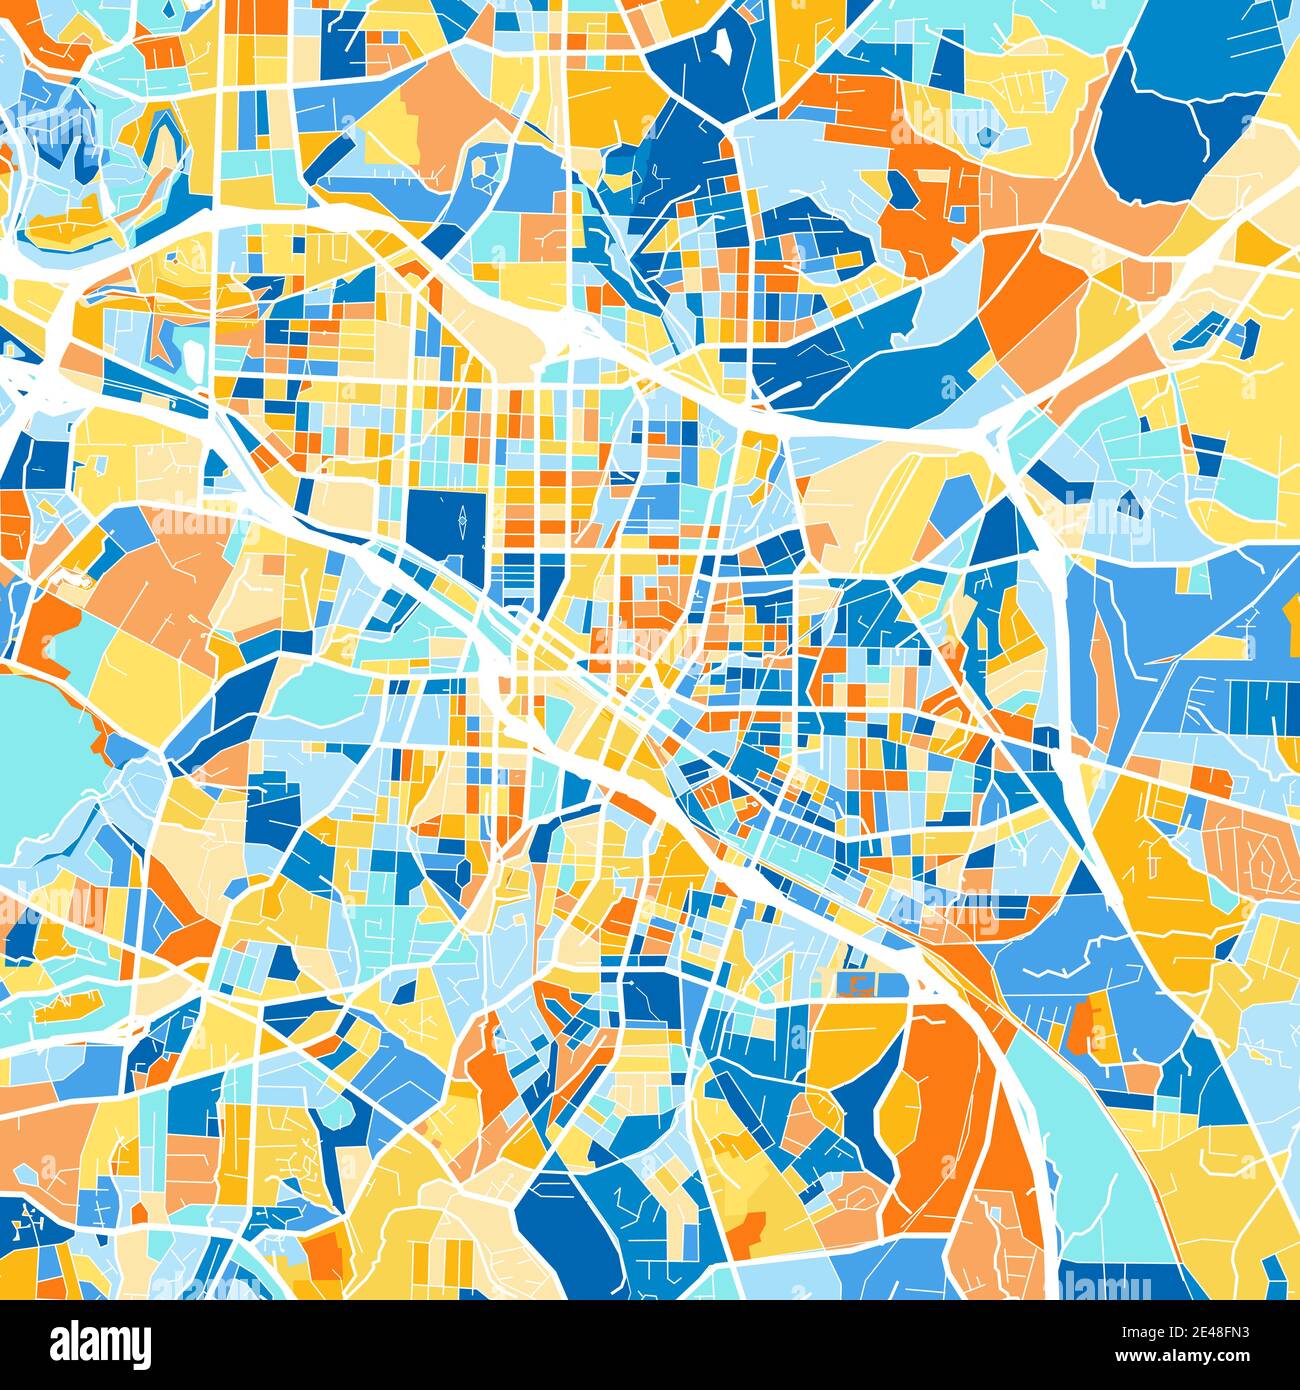 Mapa de arte en color de Durham, Carolina del Norte, UnitedStates en azules y naranjas. Las gradaciones de color en el mapa de Durham siguen un patrón aleatorio. Ilustración del Vector